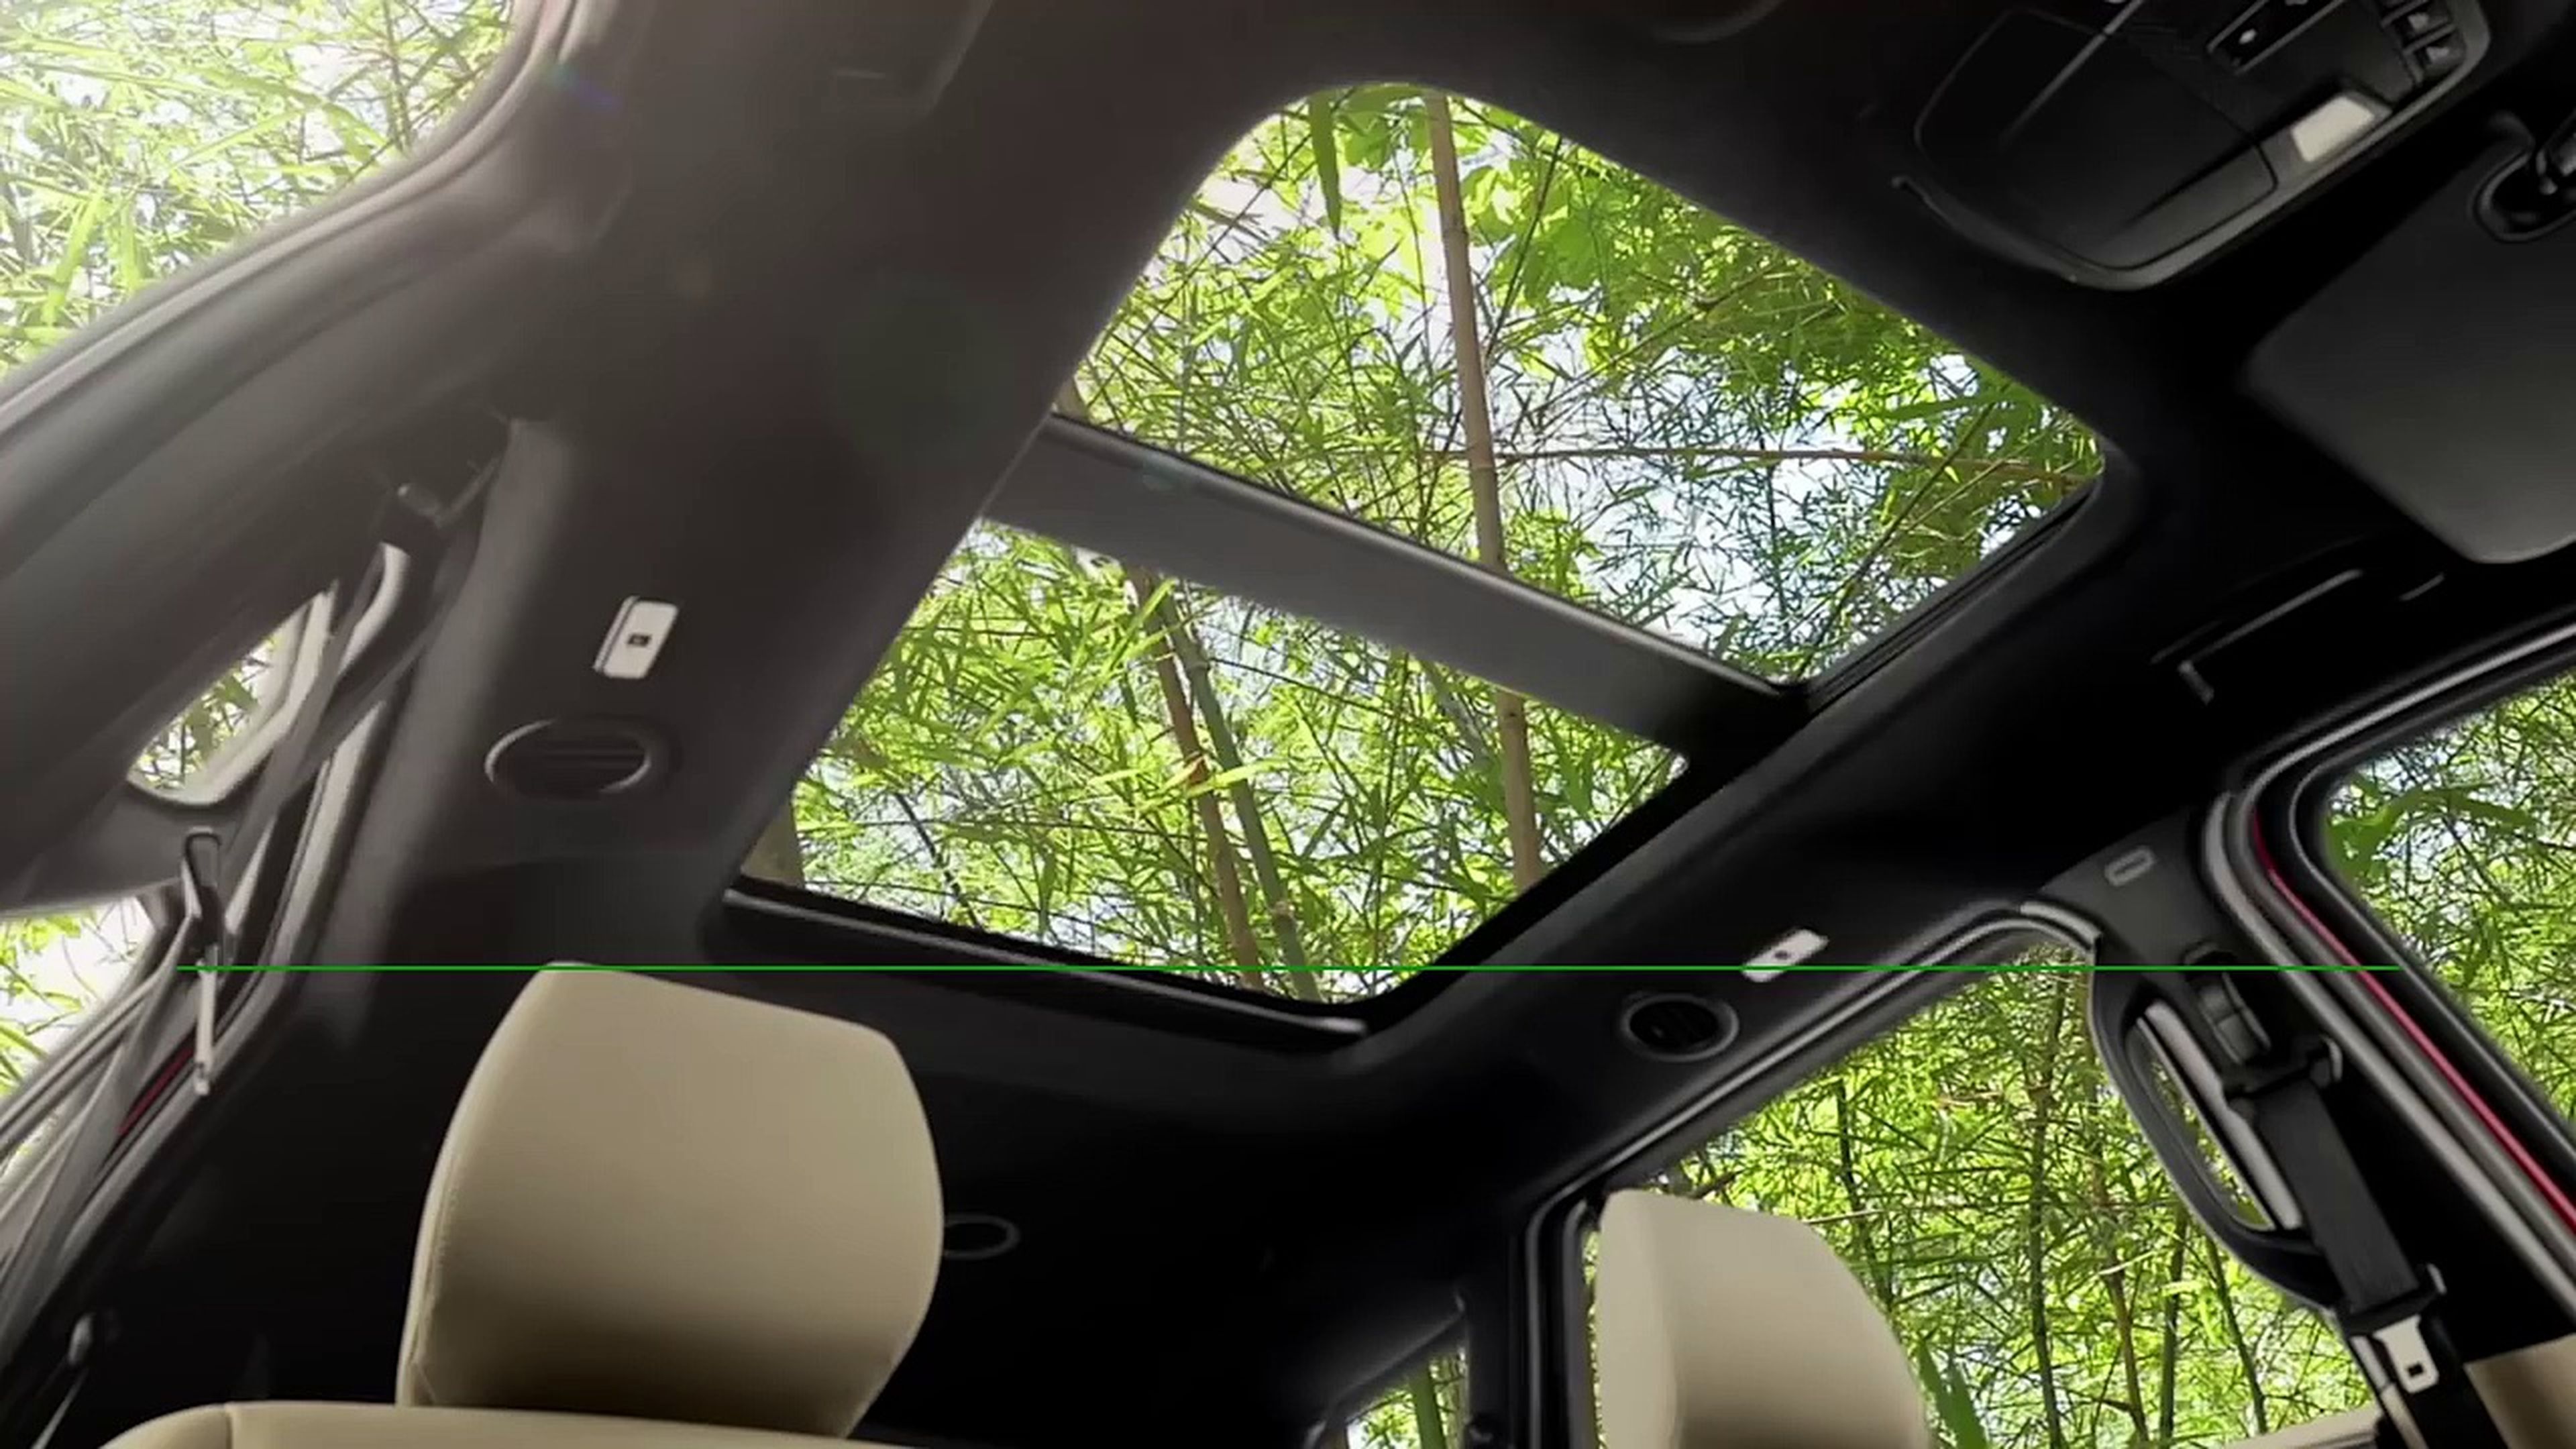 VÍDEO: pronto veremos bambú en el interior de los Ford